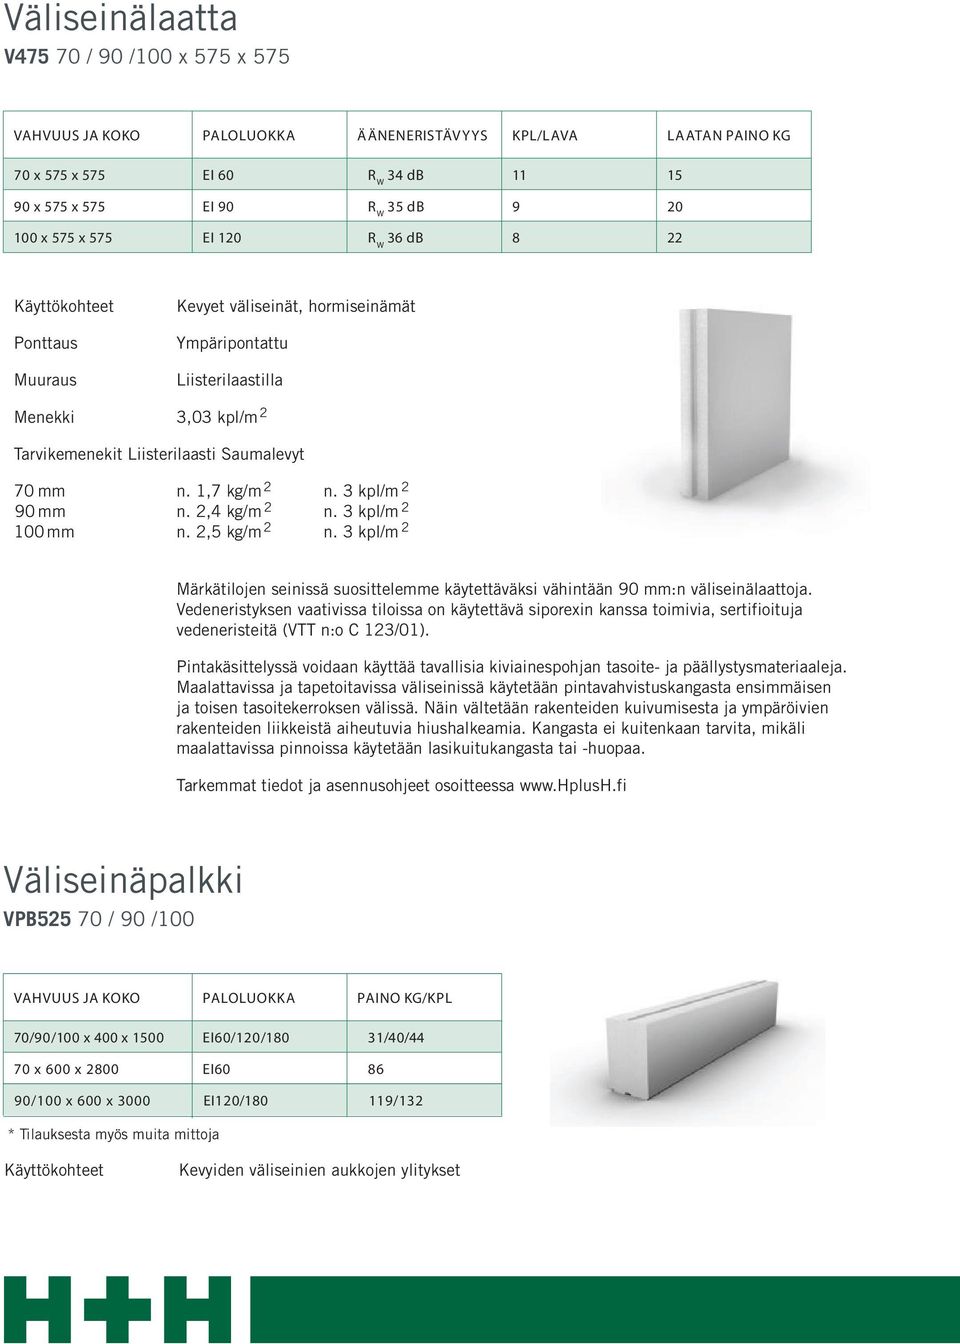 1,7 kg/m 2 n. 3 kpl/m 2 90 mm n. 2,4 kg/m 2 n. 3 kpl/m 2 100 mm n. 2,5 kg/m 2 n. 3 kpl/m 2 Märkätilojen seinissä suosittelemme käytettäväksi vähintään 90 mm:n väliseinälaattoja.